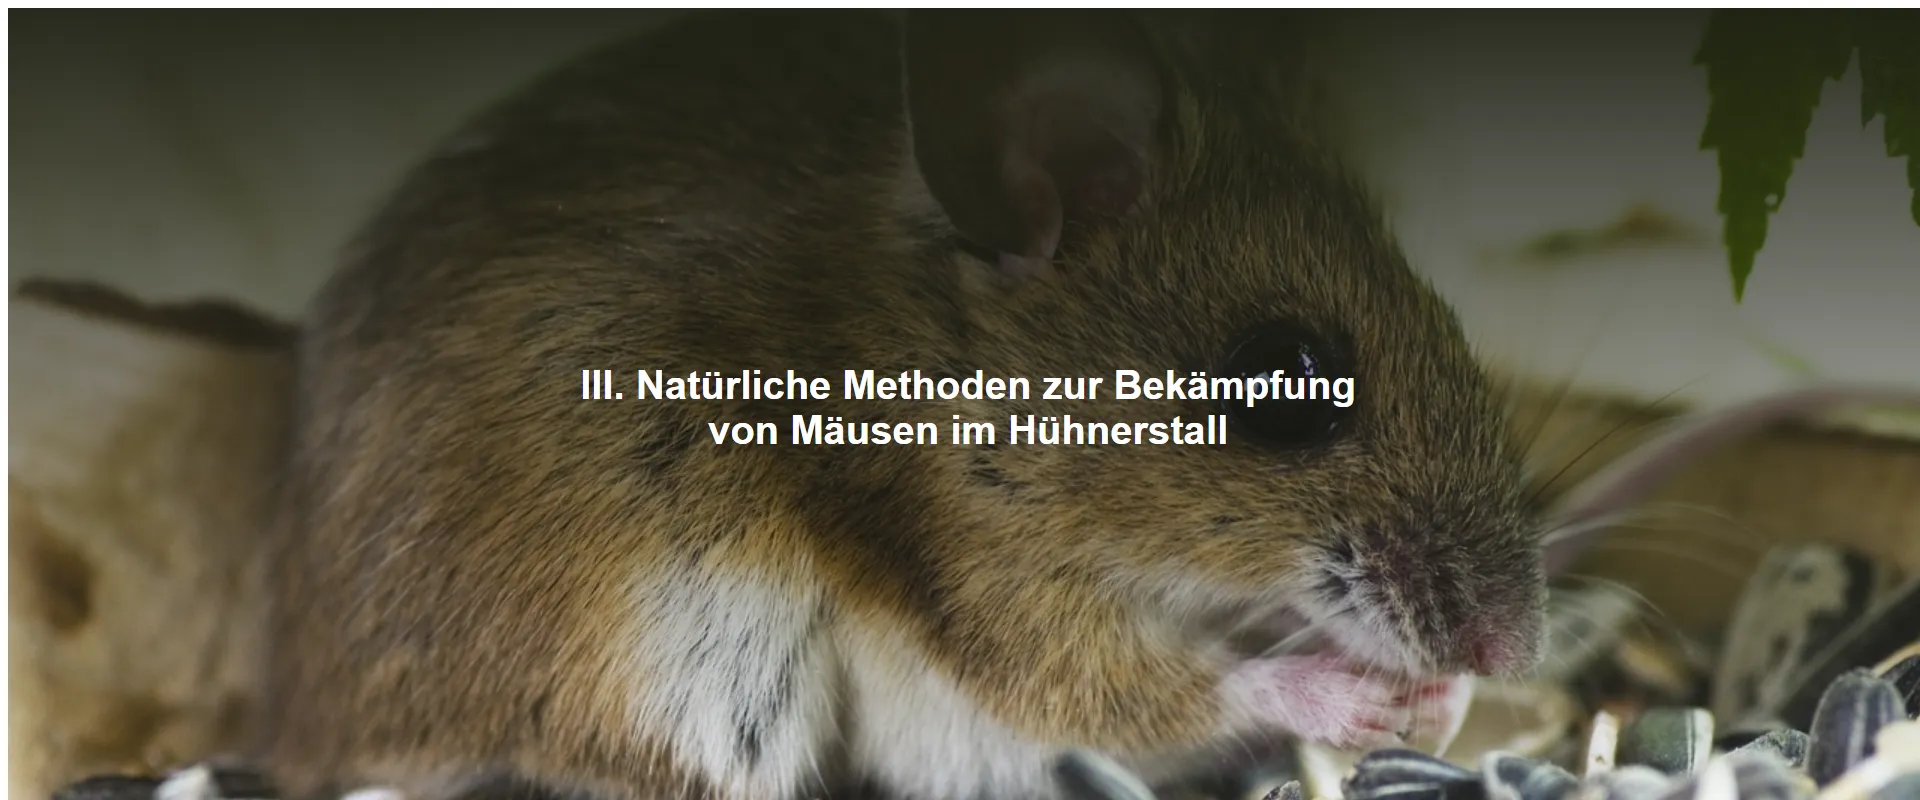 Natürliche Methoden zur Bekämpfung von Mäusen im Hühnerstall